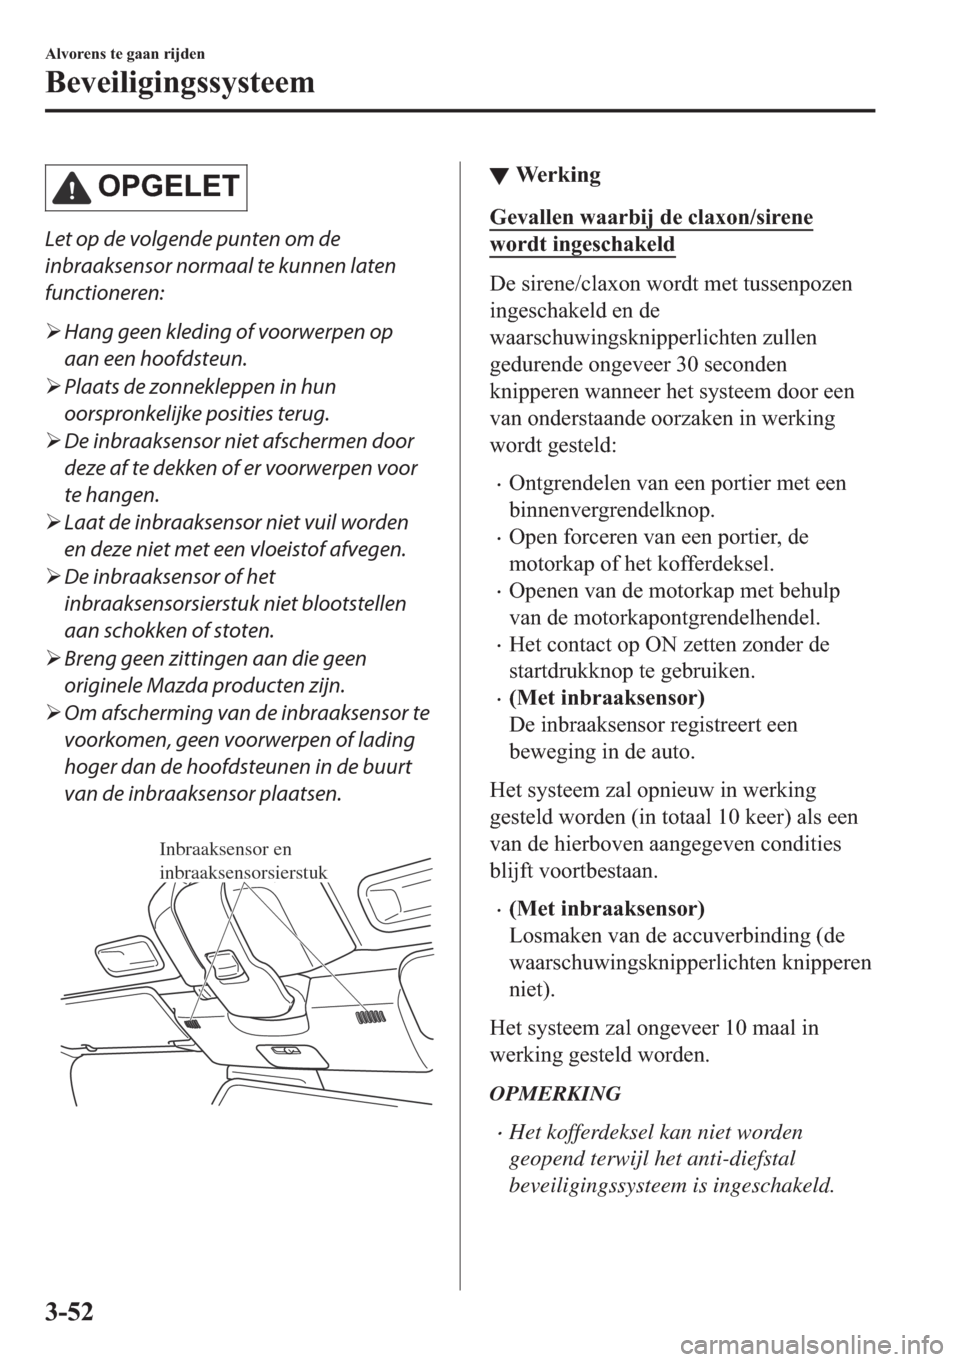 MAZDA MODEL MX-5 2017  Handleiding (in Dutch) �2�3�*�(�/�(�7
Let op de volgende punten om de
inbraaksensor normaal te kunnen laten
functioneren:
�¾Hang geen kleding of voorwerpen op
aan een hoofdsteun.
�¾Plaats de zonnekleppen in hun
oorspronke